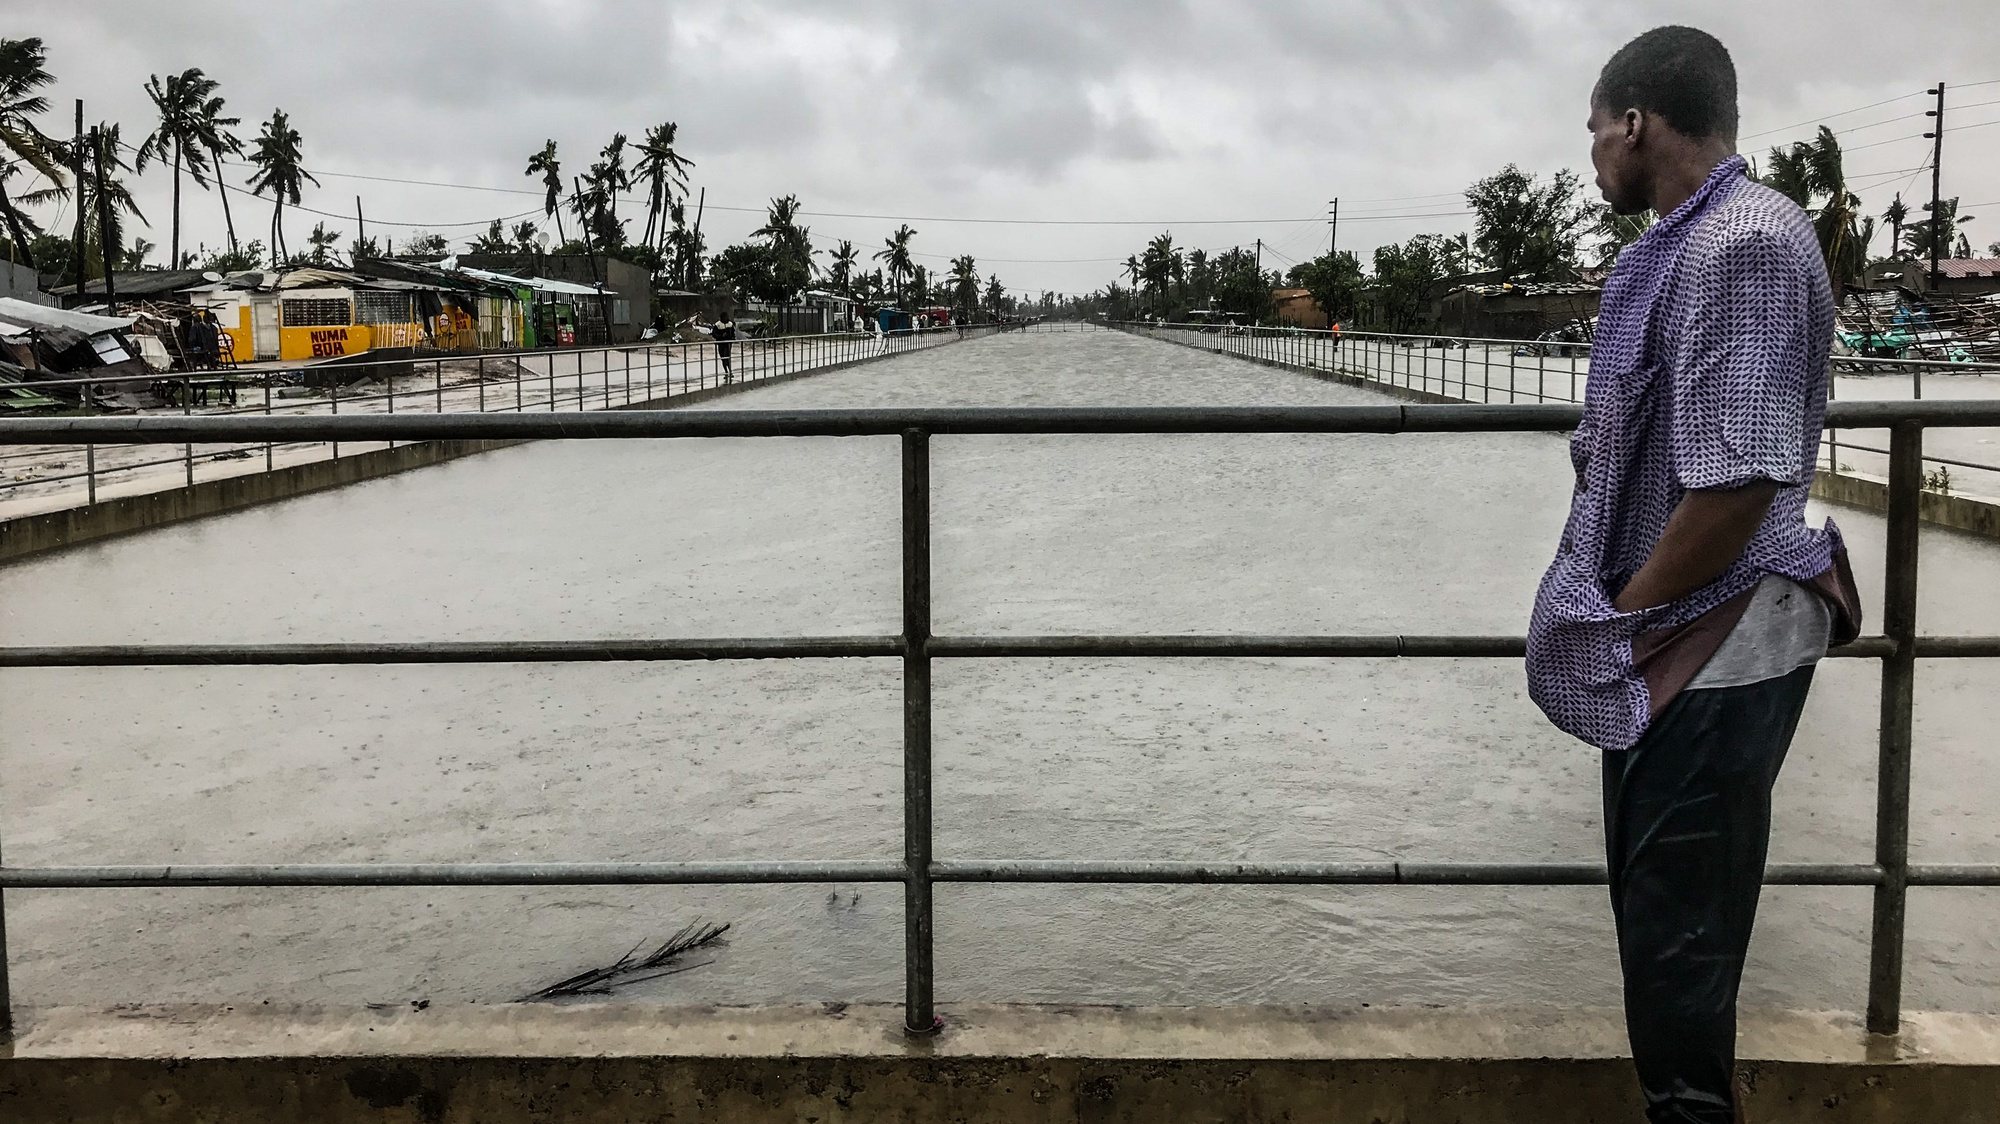 Beira acorda com inundações e destruição após ciclone Eloise atingir centro de Moçambique